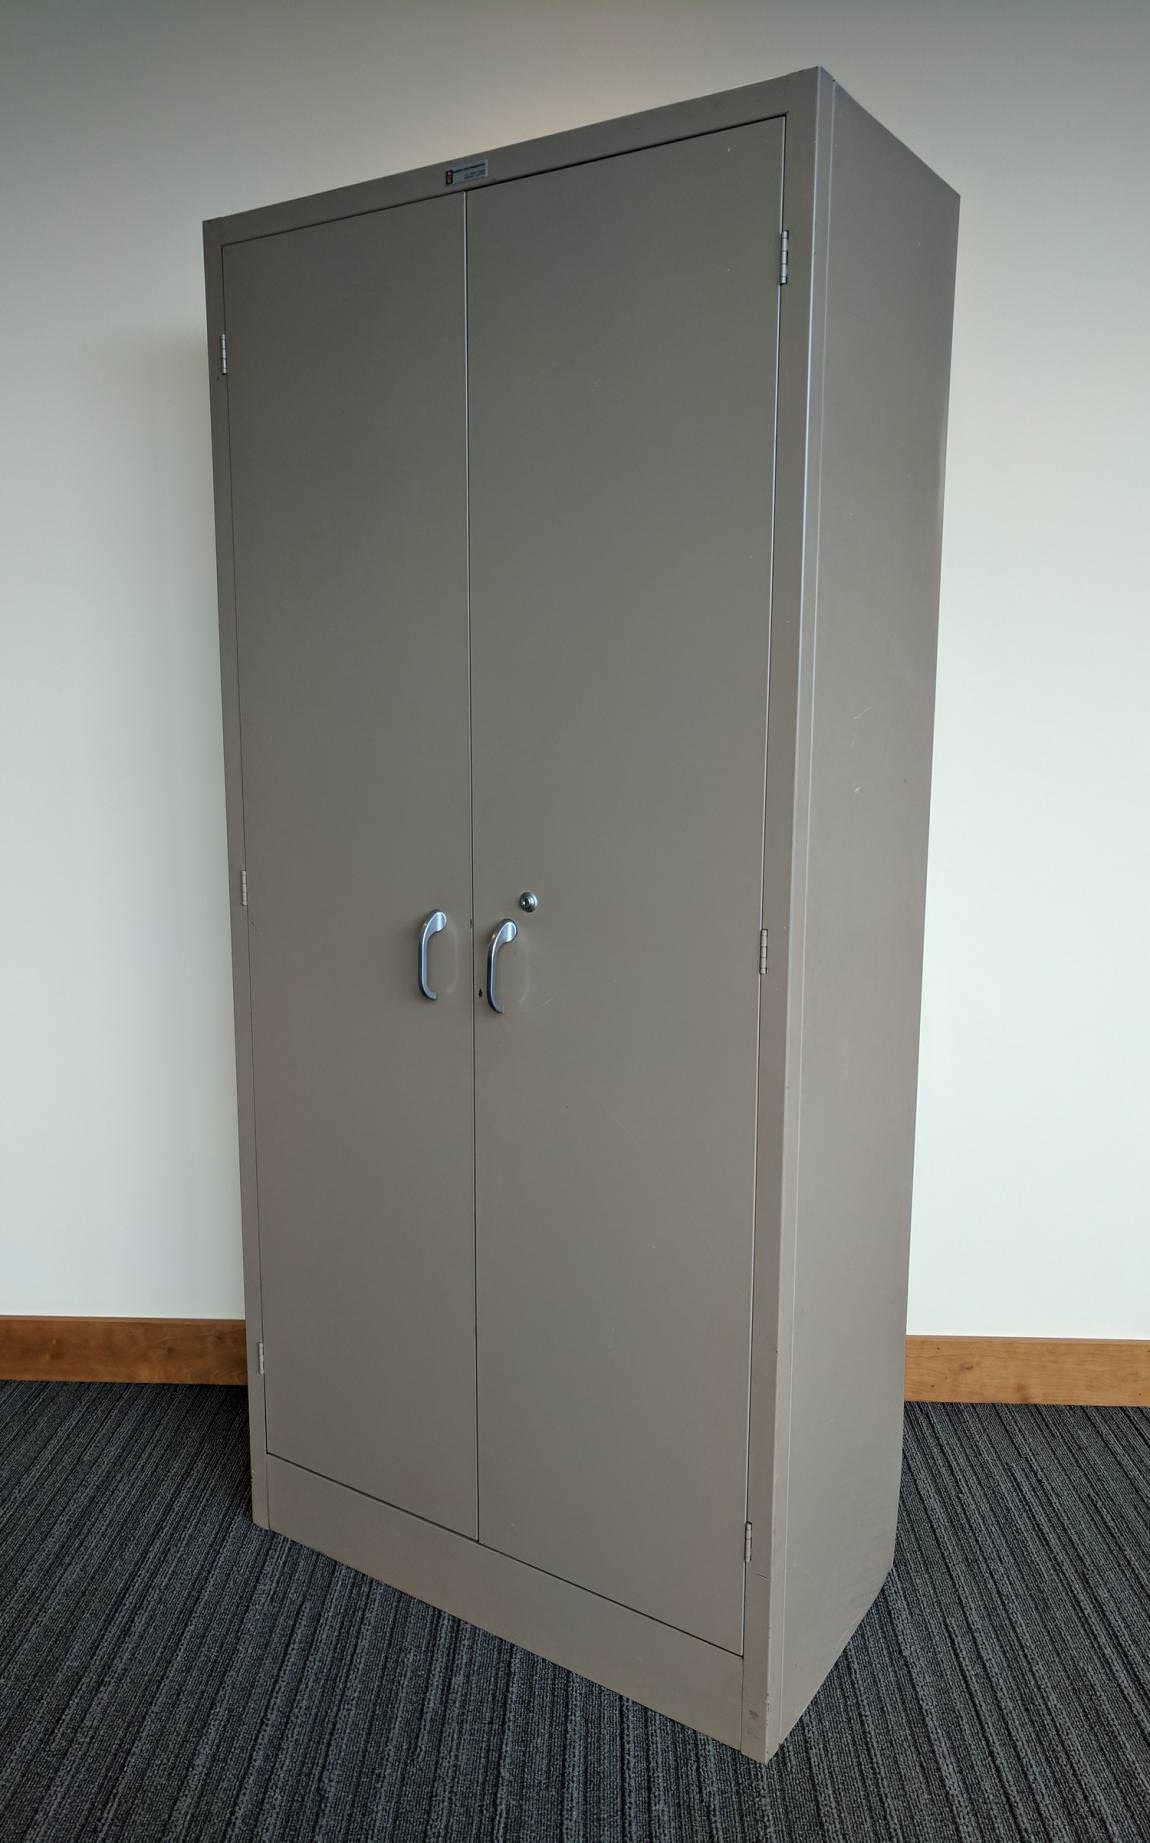 Tan Aurora Storage Cabinet – 36 Inch Wide